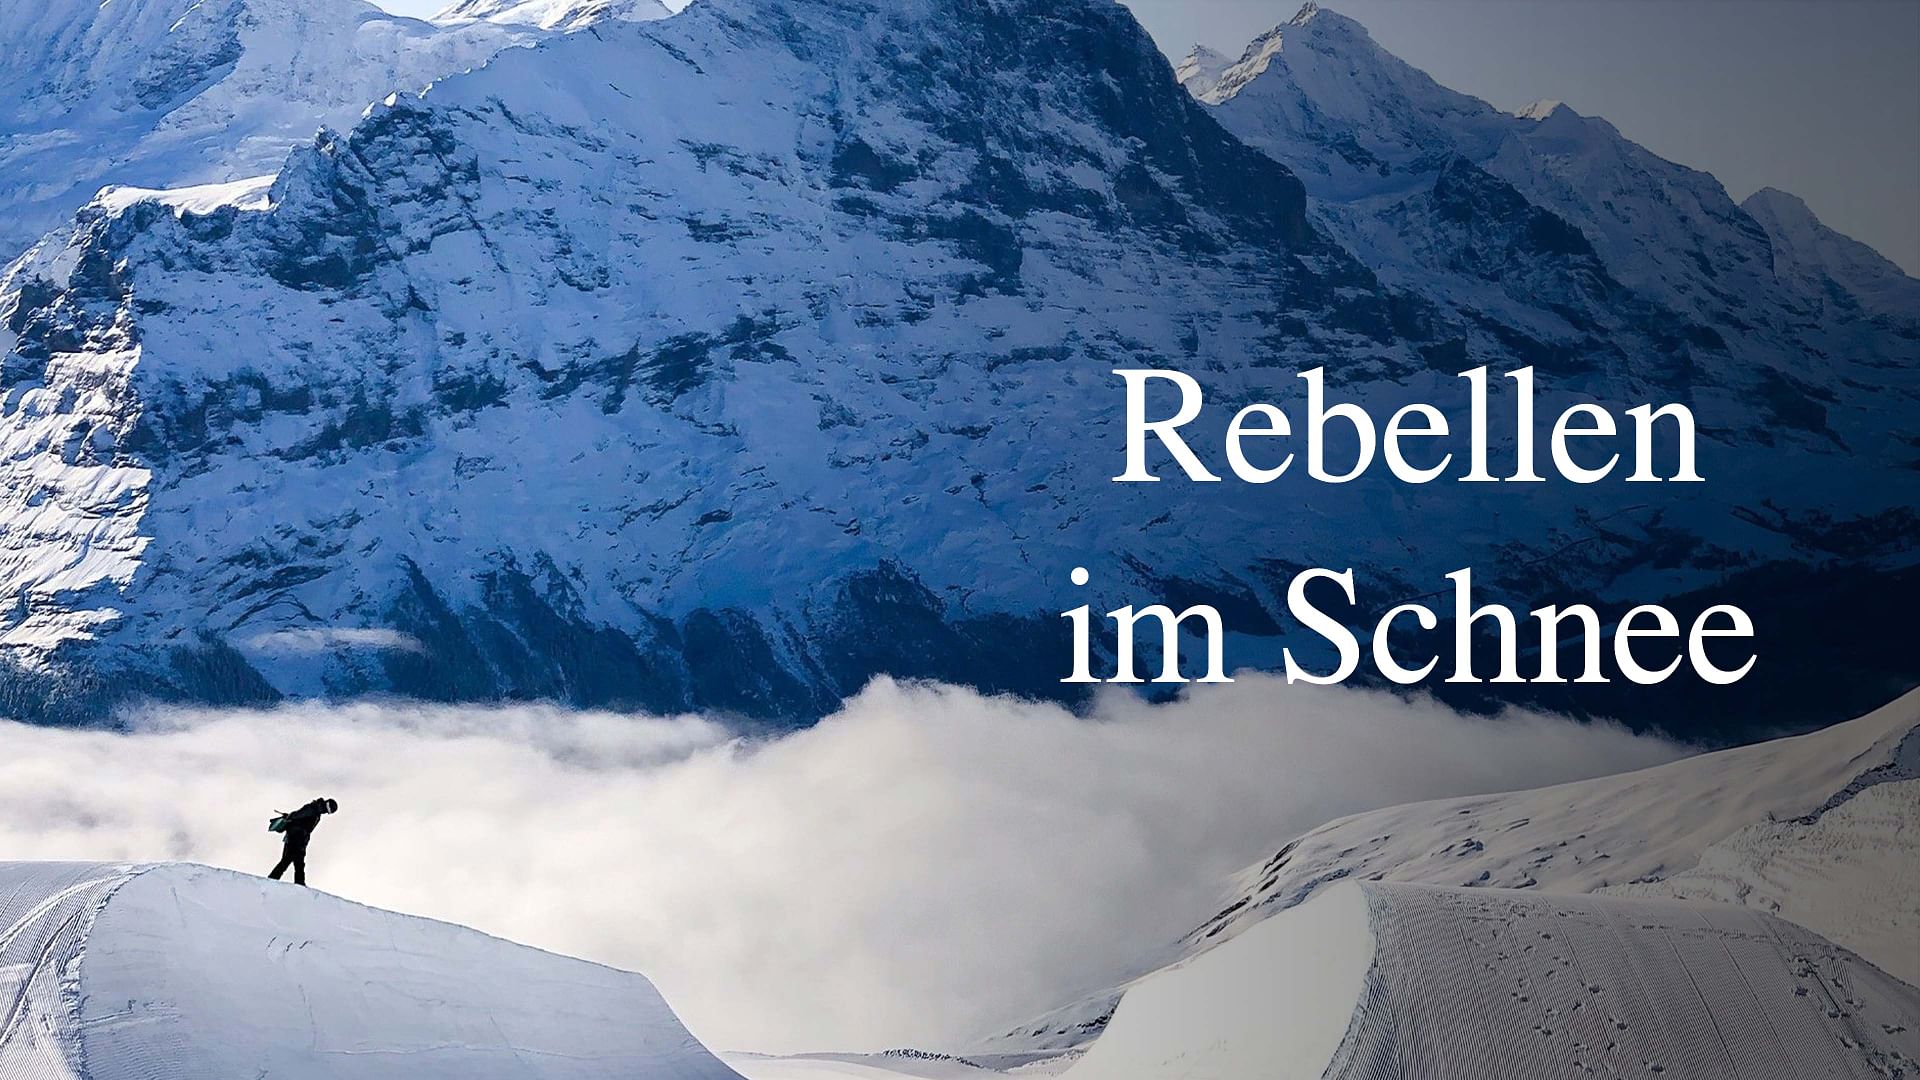 Rebellen im Schnee - 40 Jahre Schweizer Snowboard-Kultur